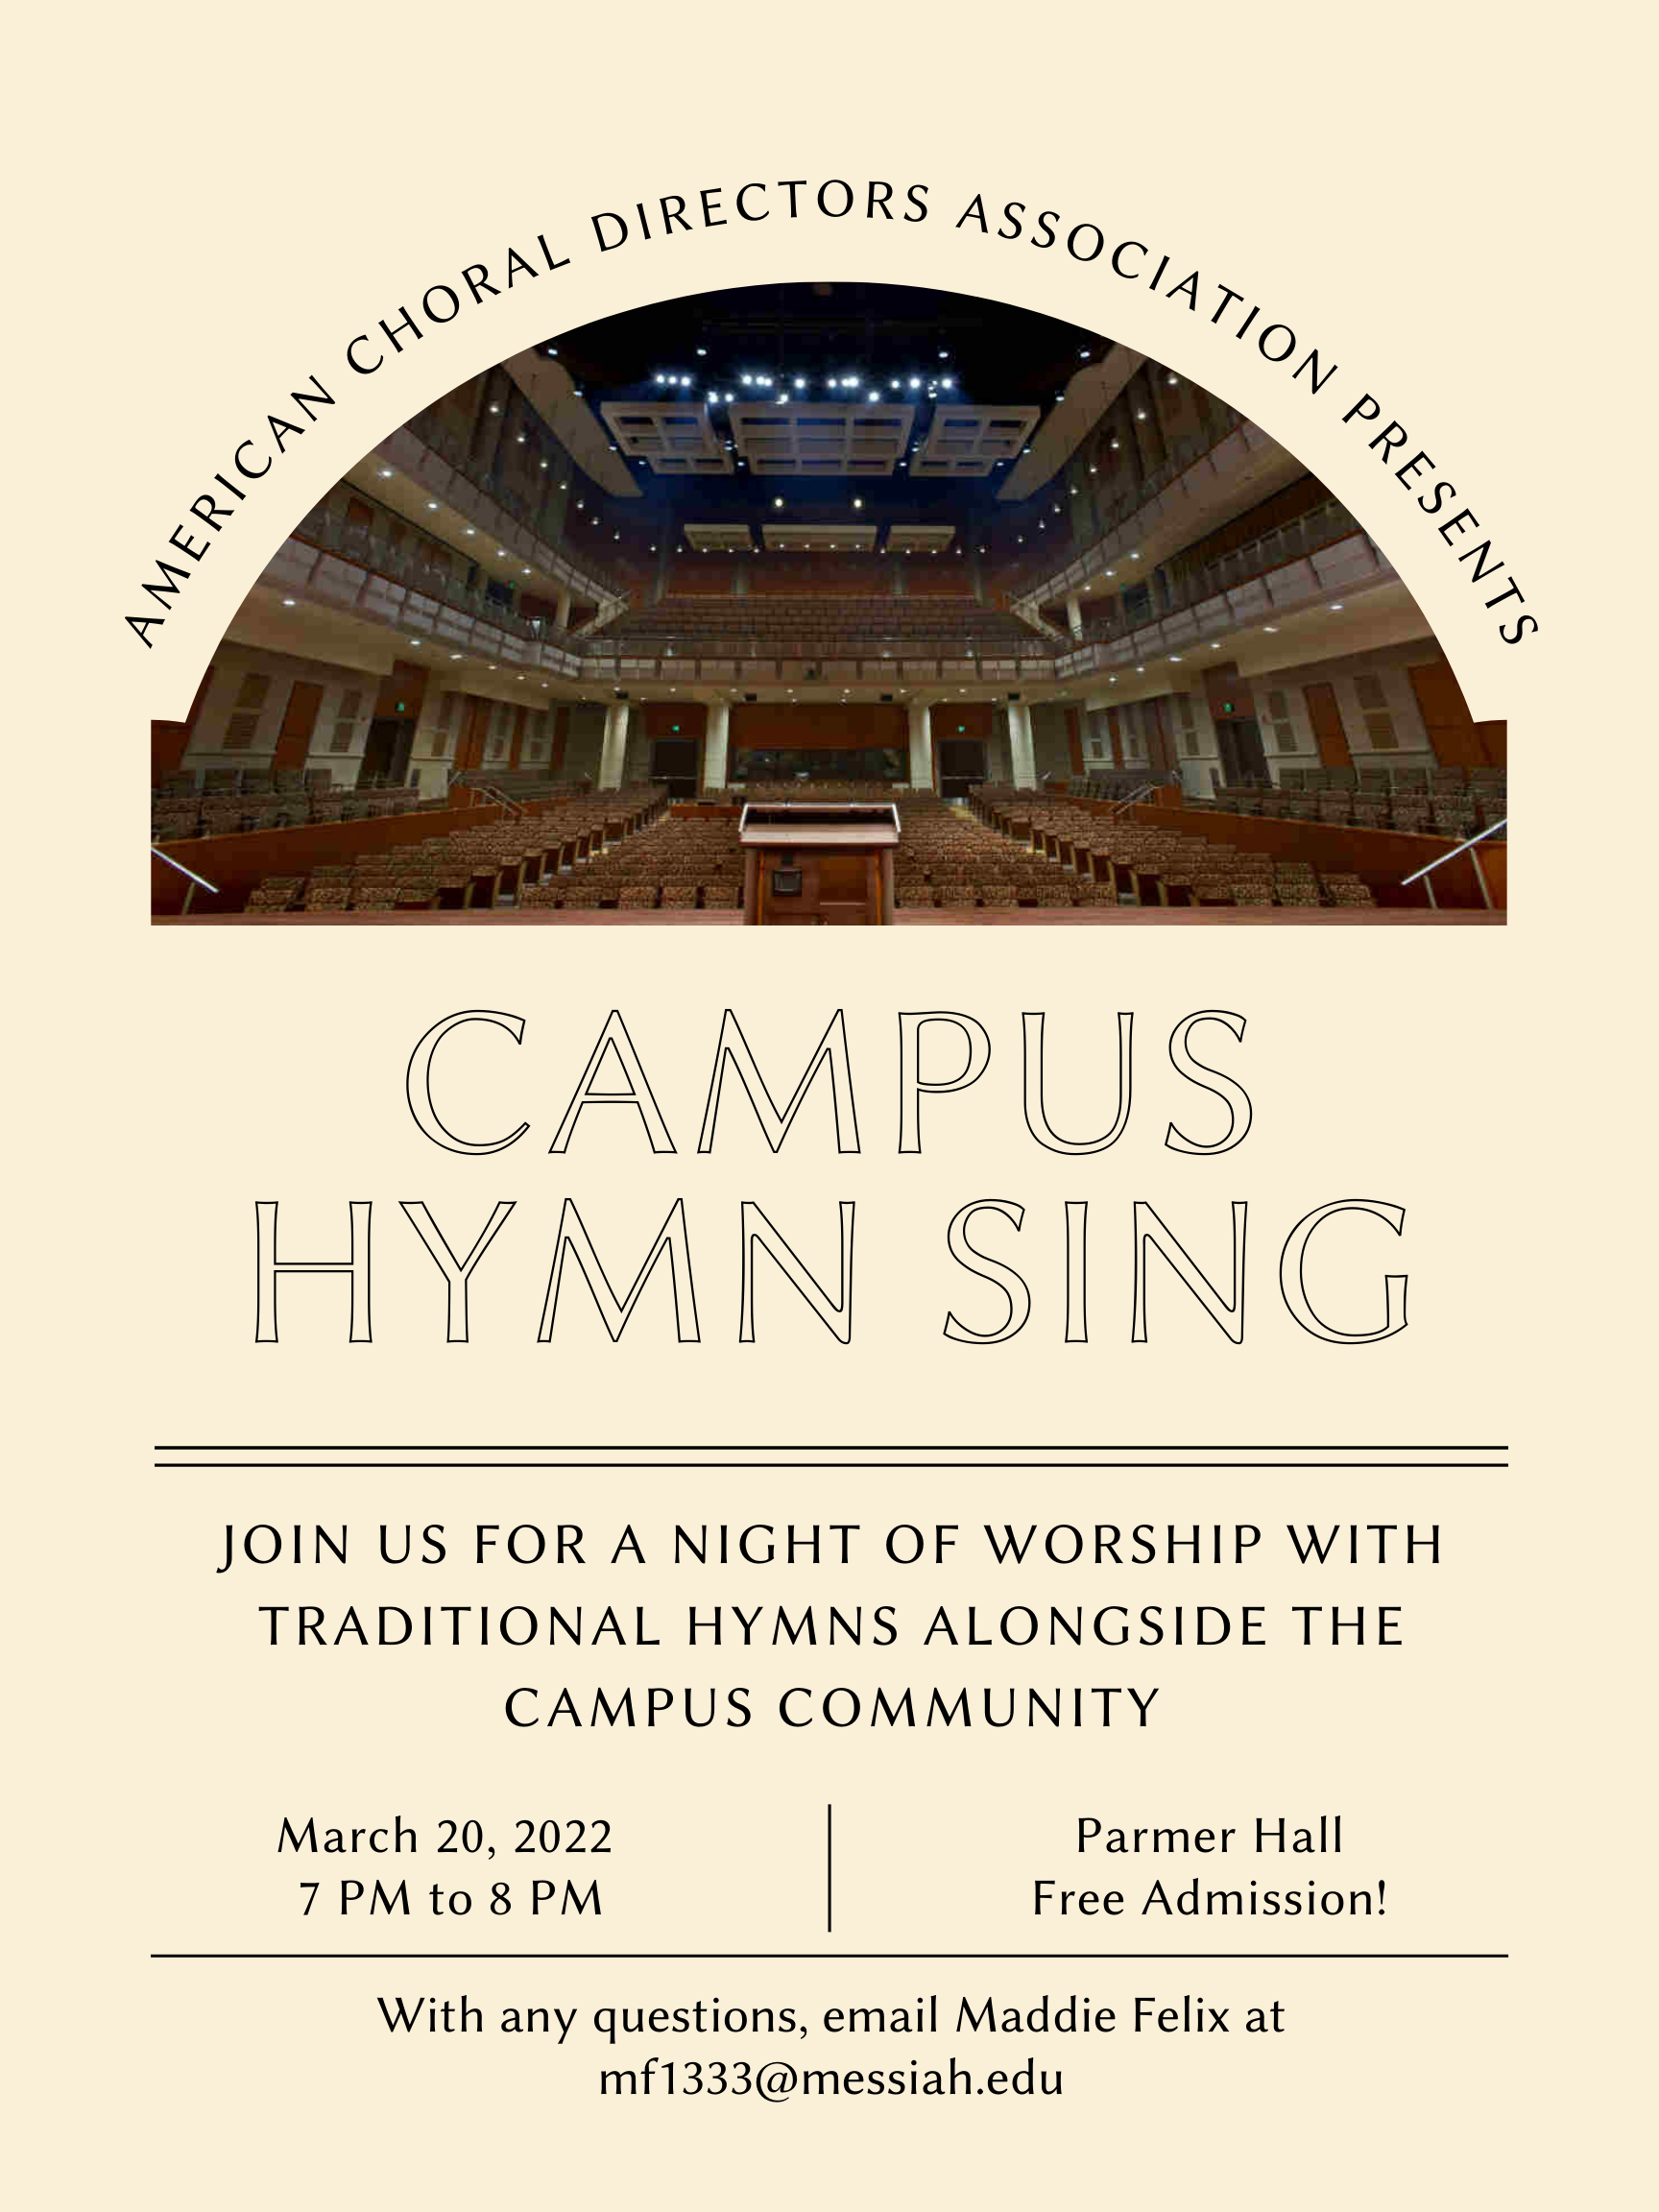 Campus hymn sing march